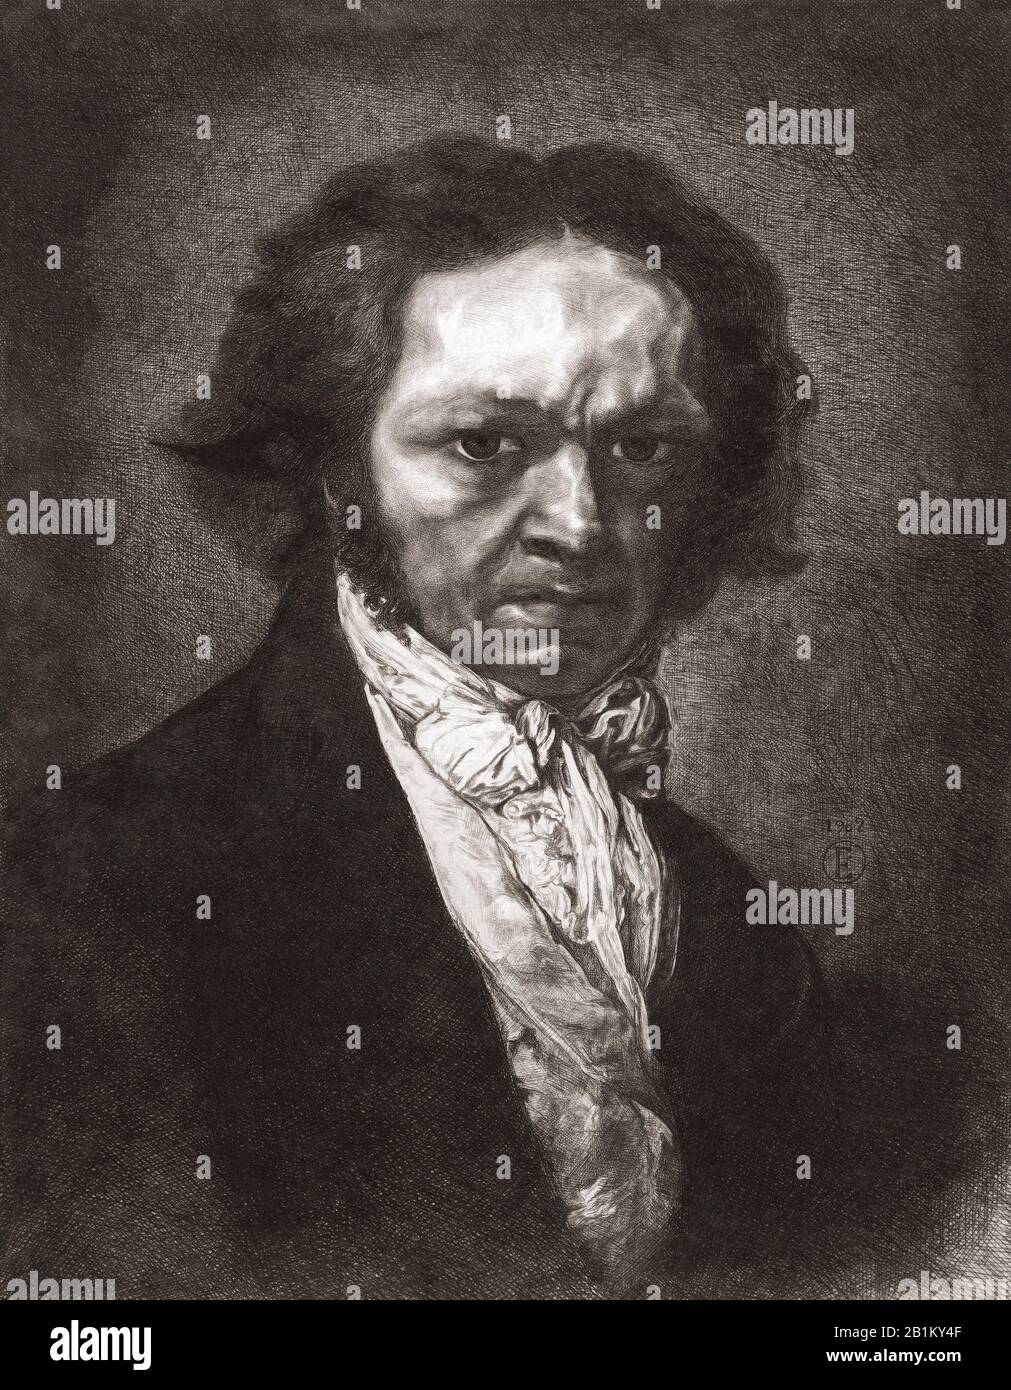 Porträt von Francisco de Goya. Francisco José de Goya y Lucientes, 1746 - 186. Spanischer Maler und Druckerhersteller. Nach einer Radierung des spanischen Künstlers Rogelio de Egusquiza y Barrena, zwischen ca. Stockfoto